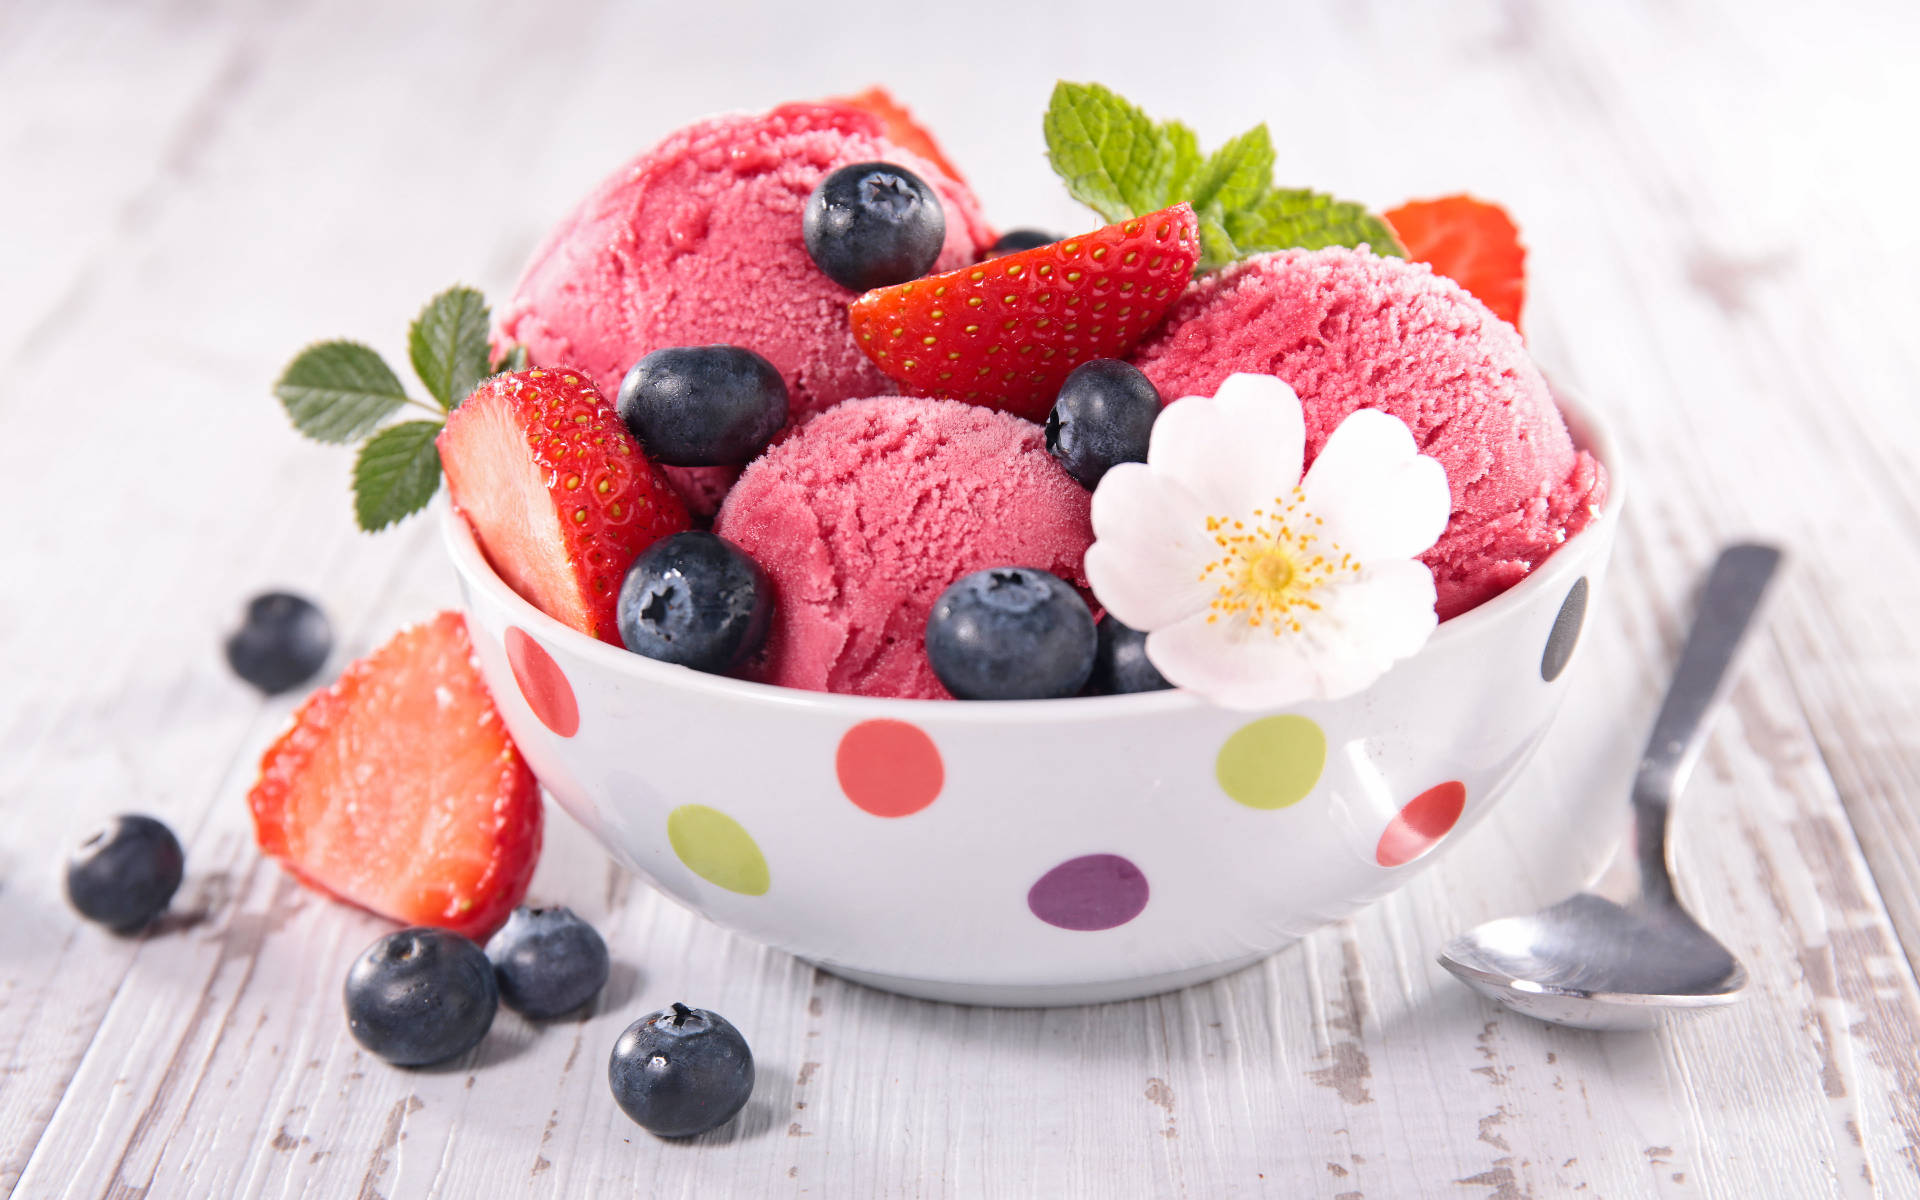 Ice Cream With Berries